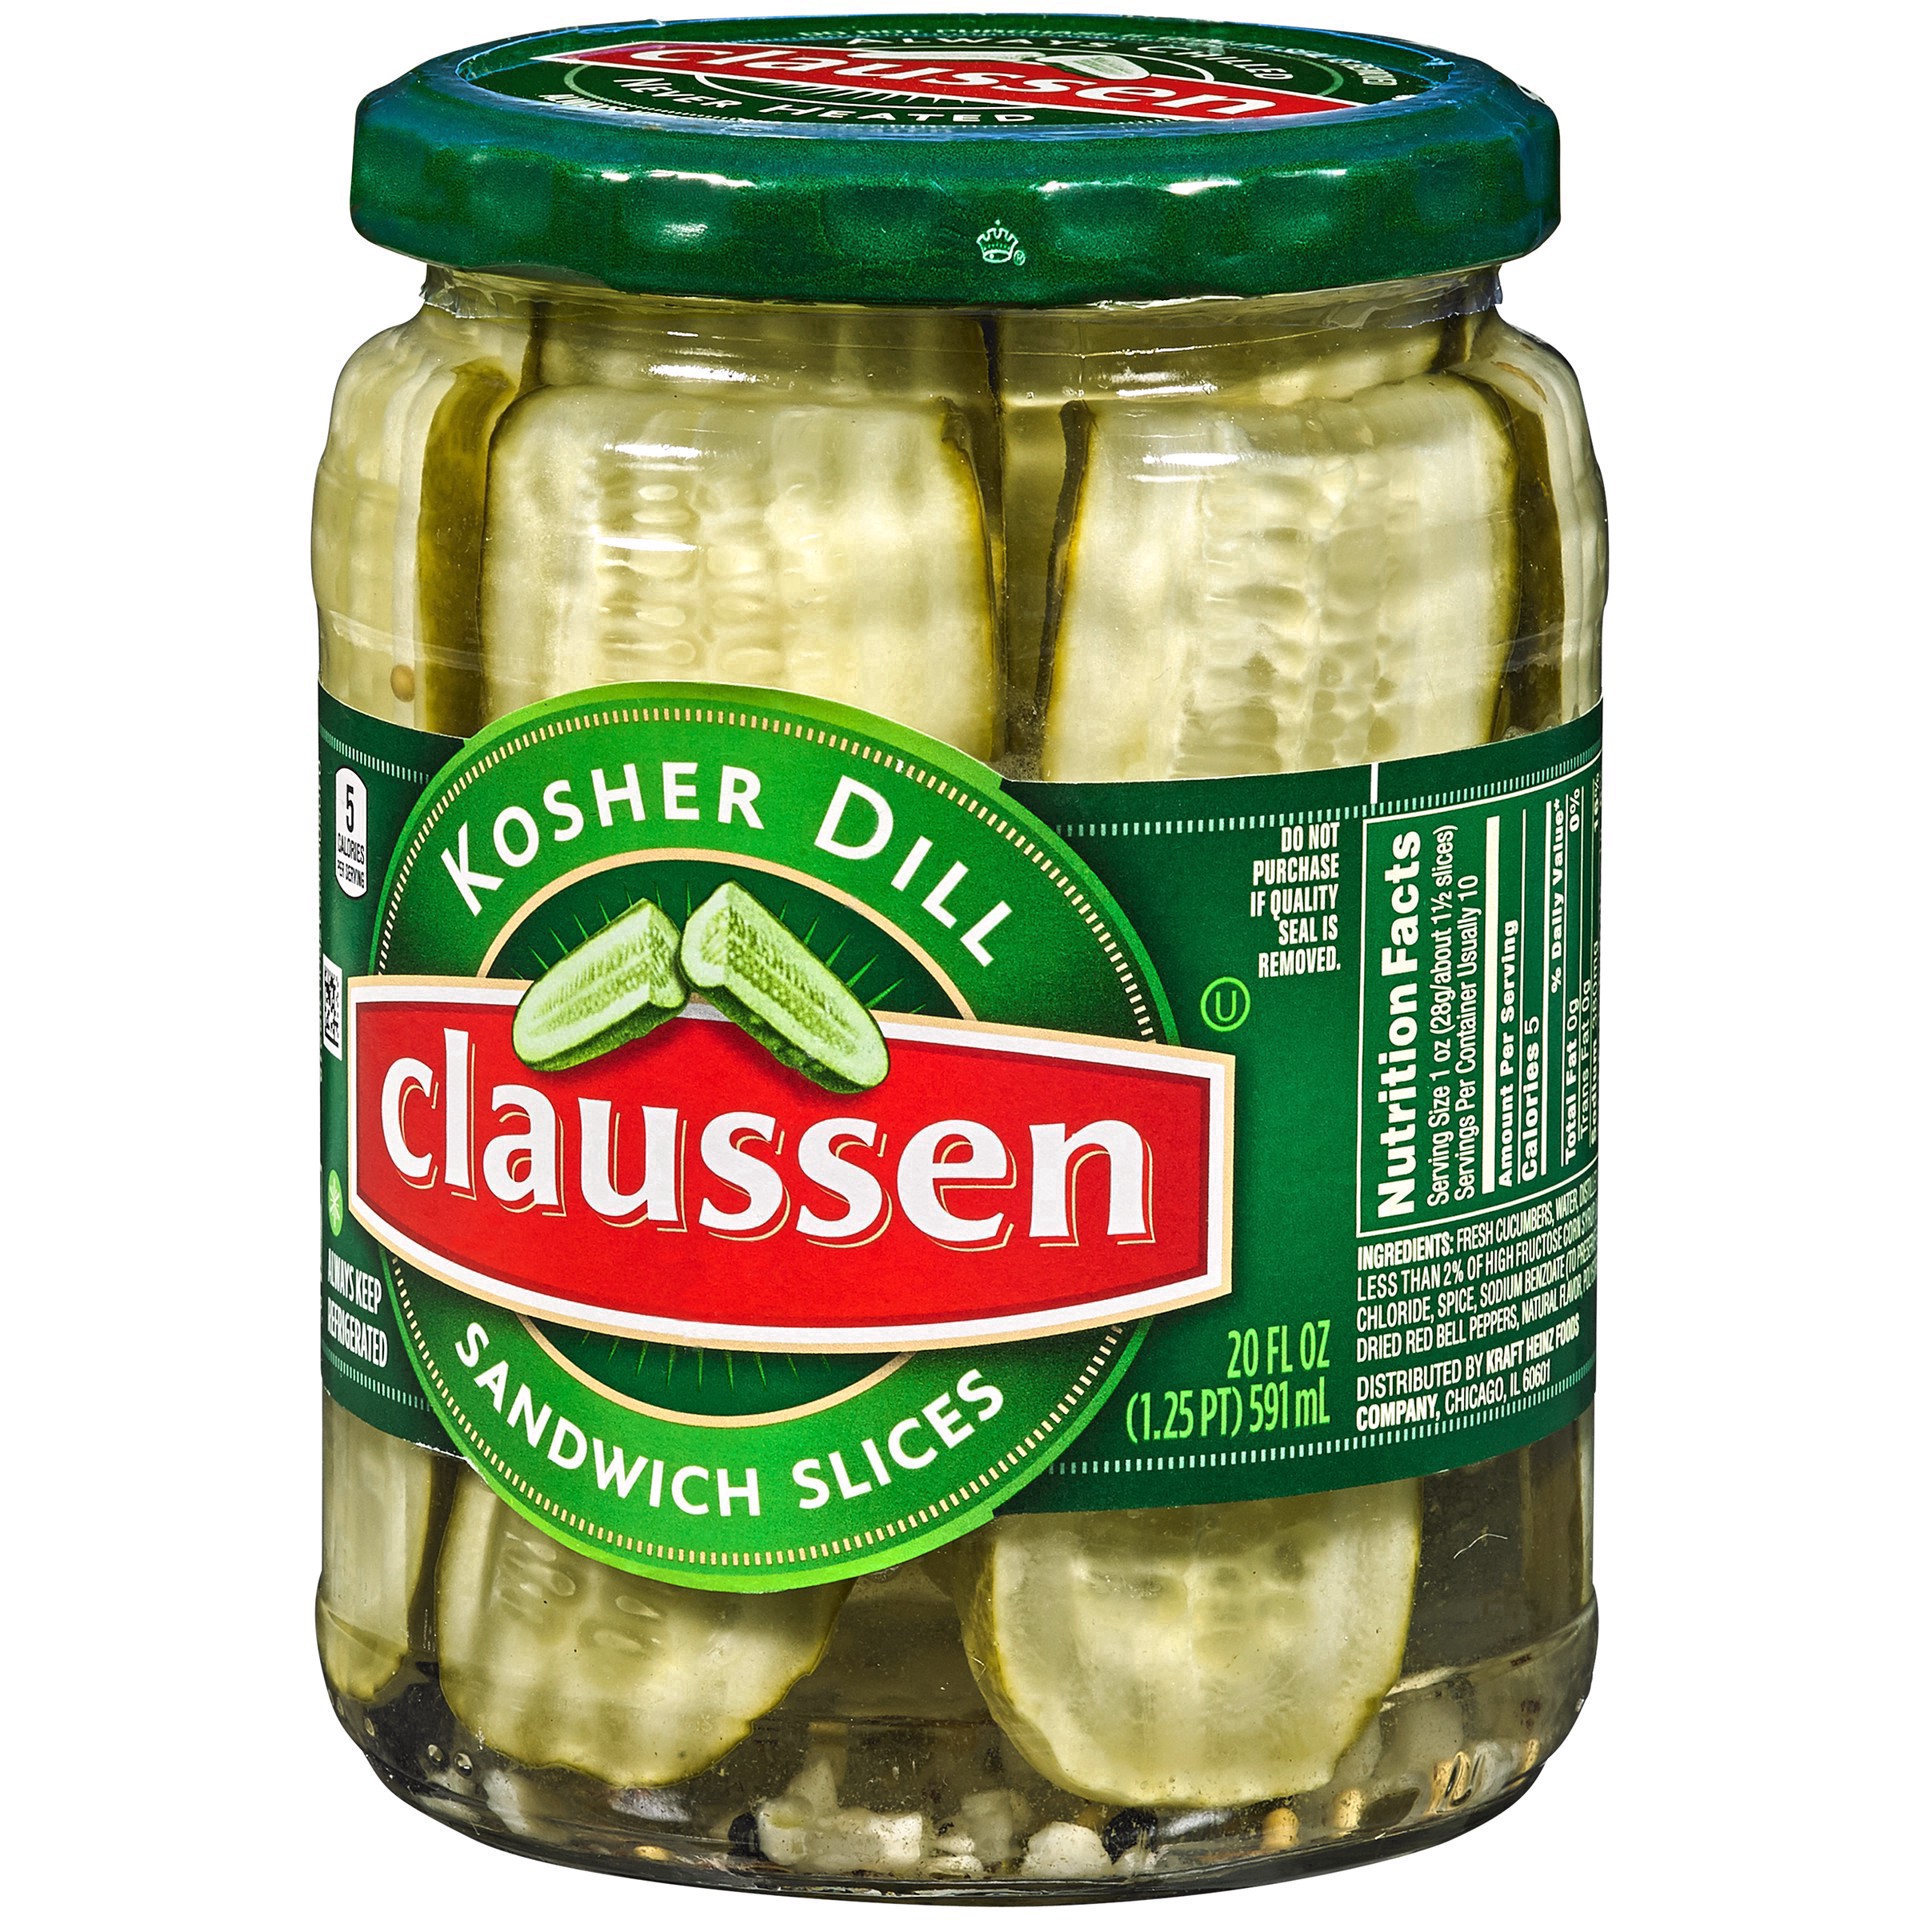 slide 29 of 144, Claussen Kosher Dill Pickle Sandwich Slices, 20 fl. oz. Jar, 20 fl oz